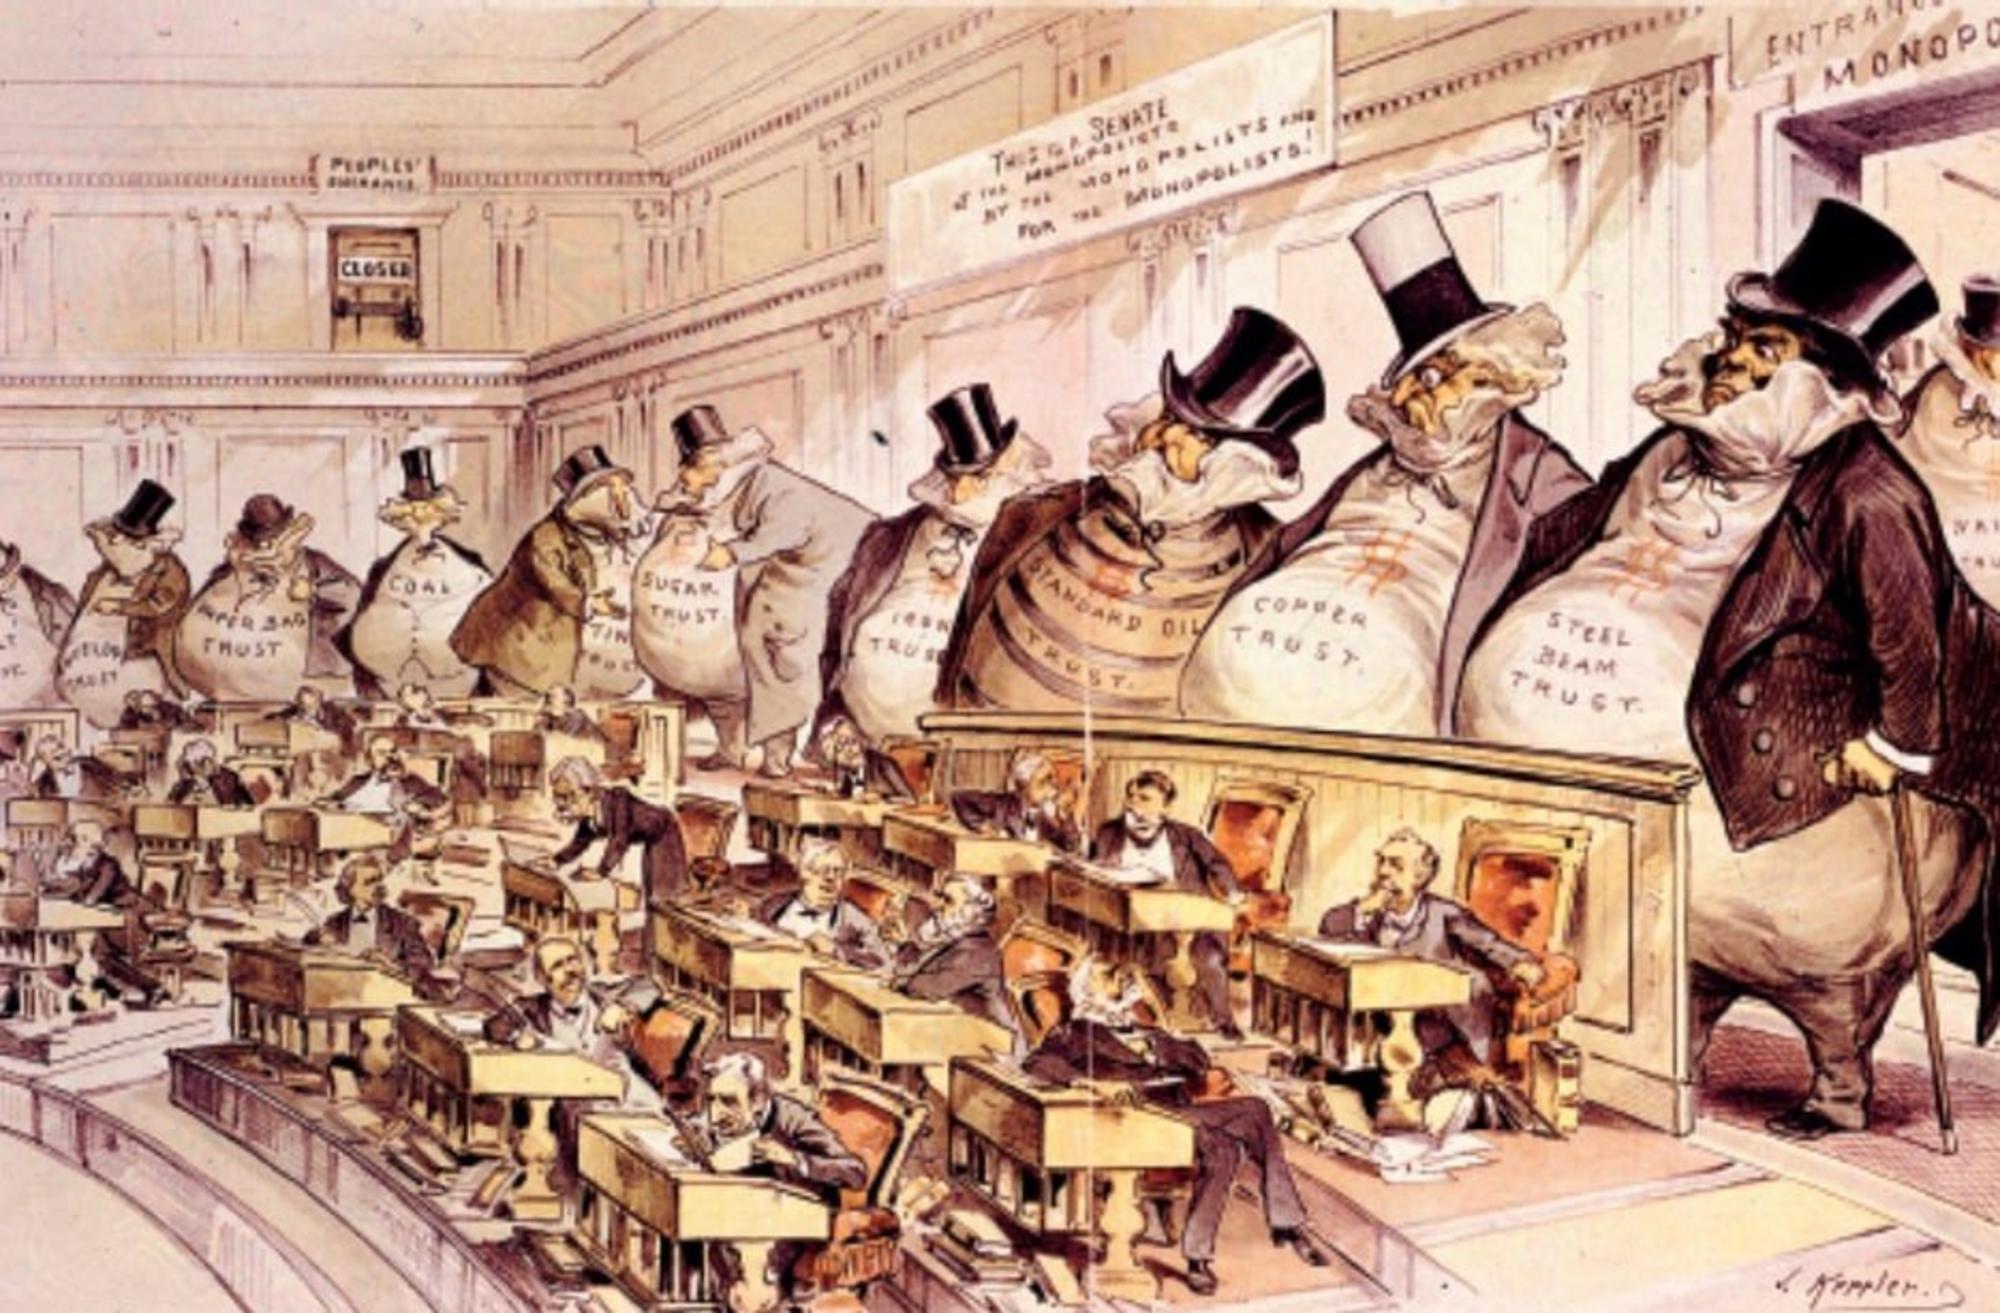 Joseph Keppler's (1899) - Caricatura ilustrando la plutocracia